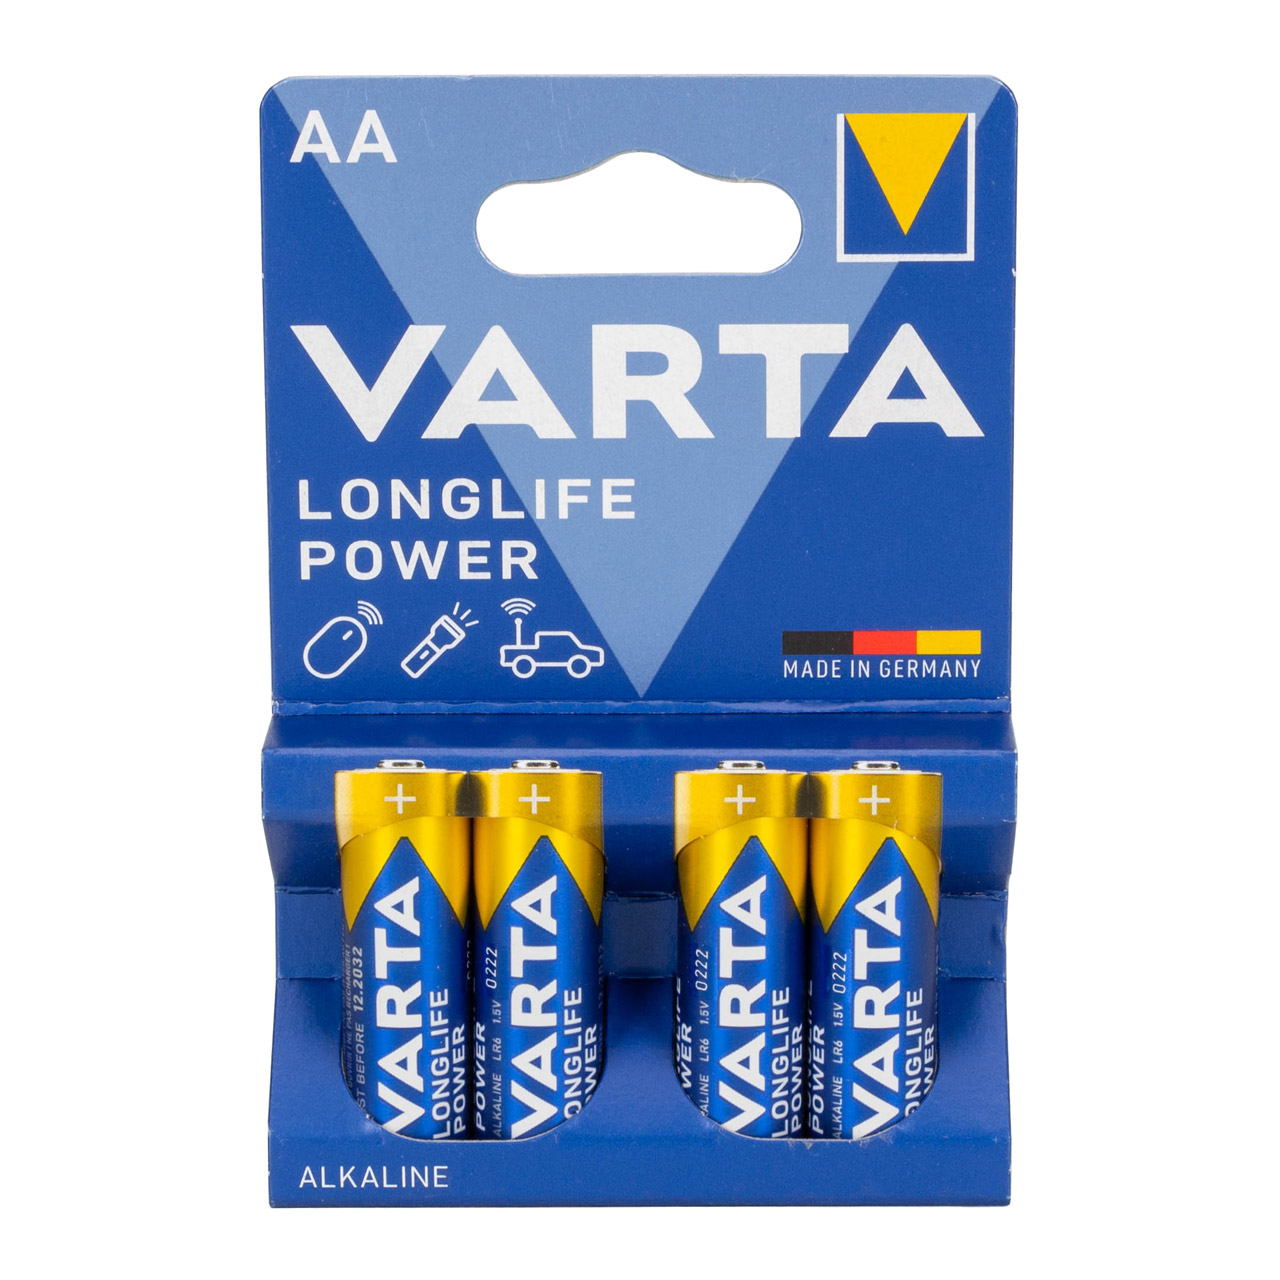 20x VARTA LONGLIFE POWER ALKALINE Batterie AA MIGNON 4906 LR6 MN1500 1,5V